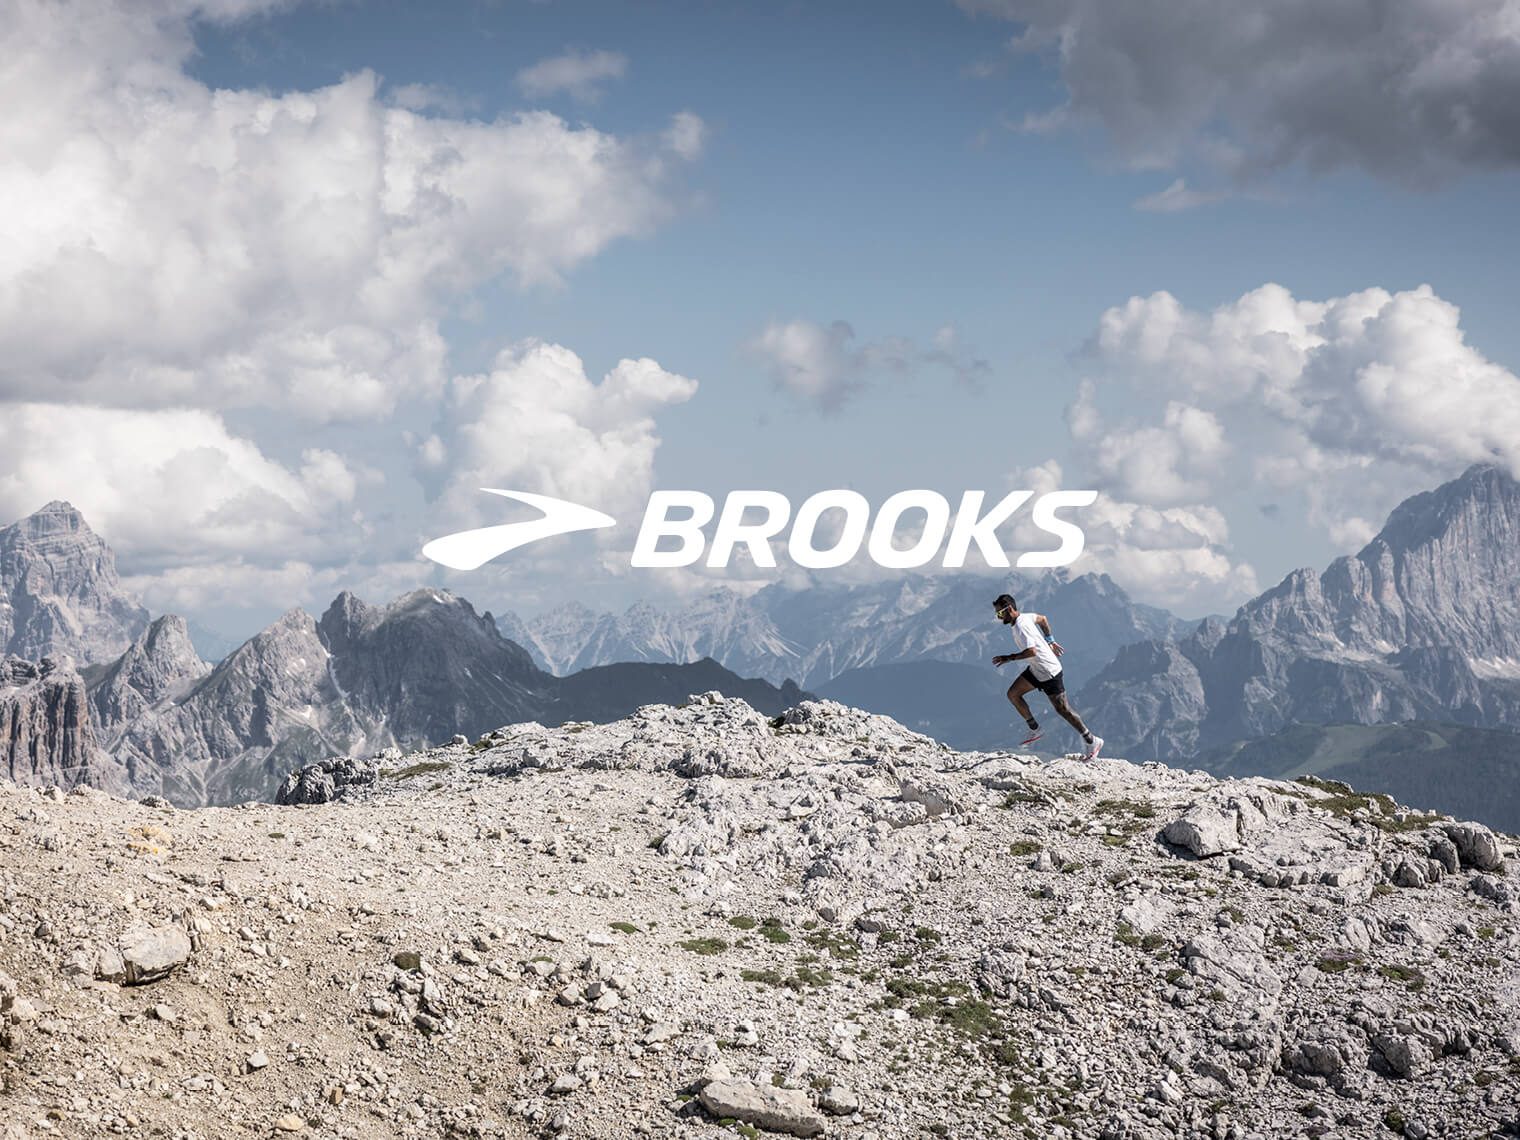 Brooks Brandshop